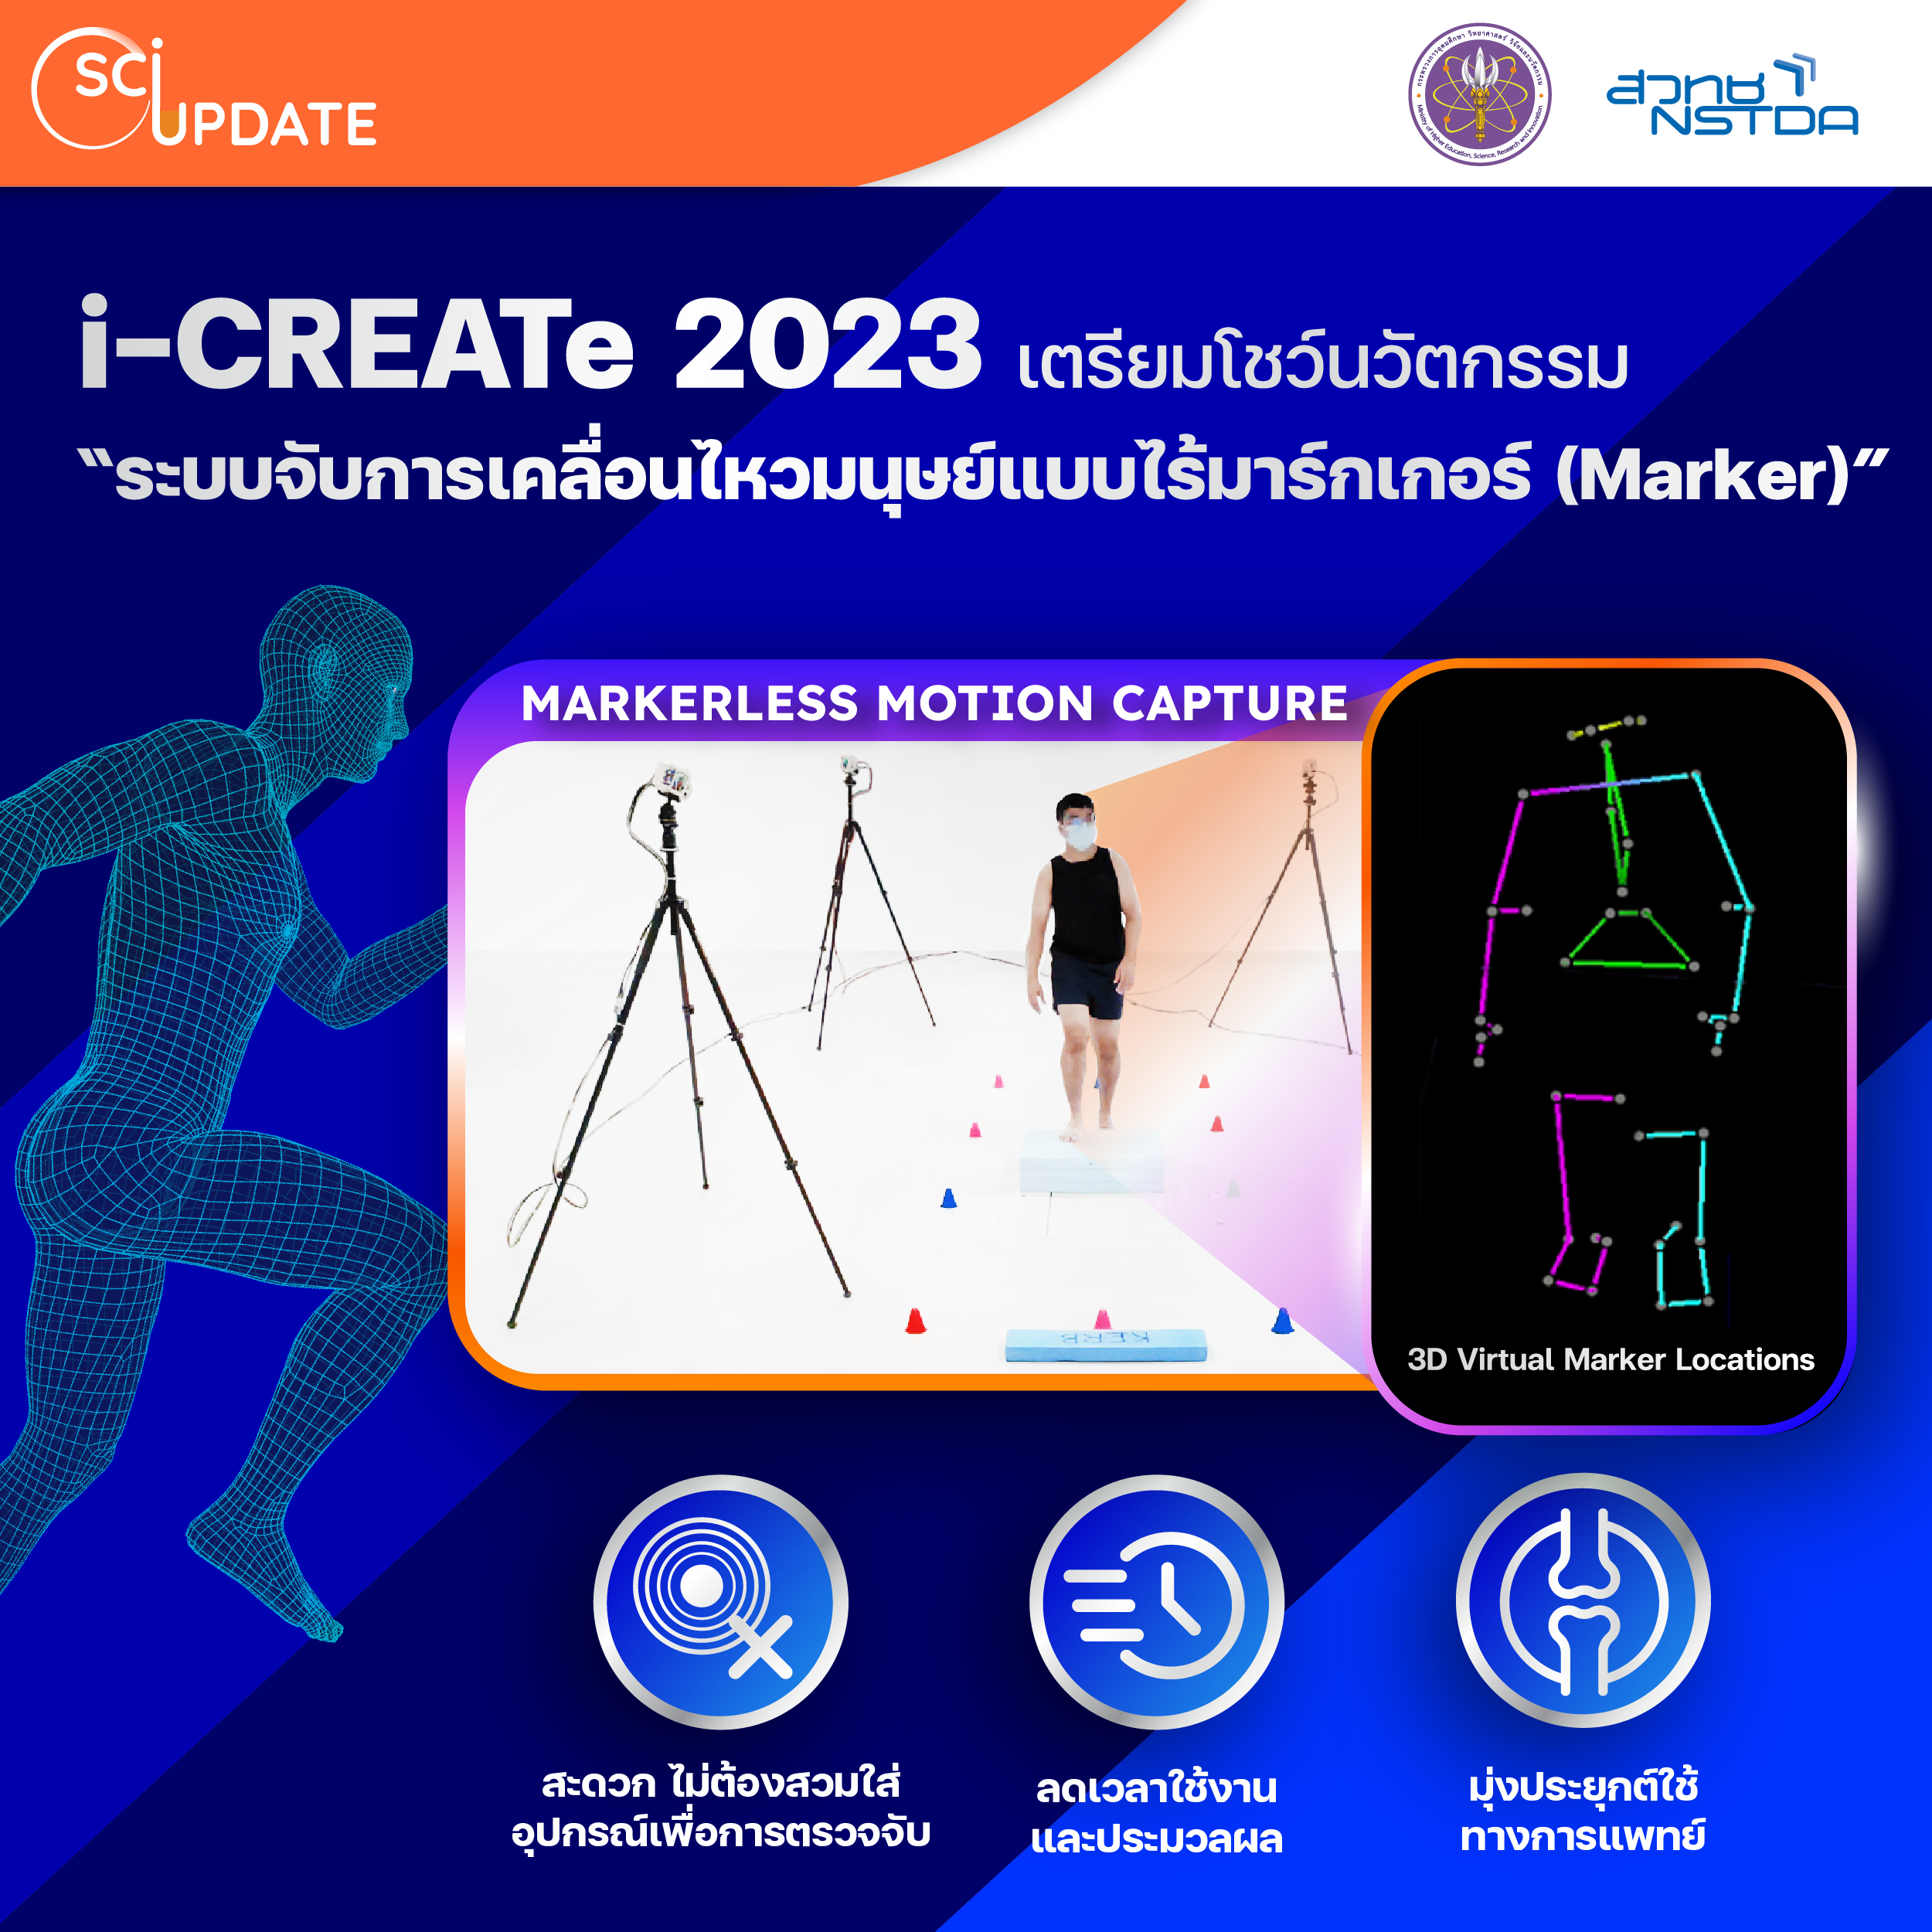 i-CREATe 2023 โชว์นวัตกรรม “ระบบจับการเคลื่อนไหวมนุษย์แบบไร้มาร์กเกอร์ (Marker)” เตรียมประยุกต์ใช้ทางการแพทย์